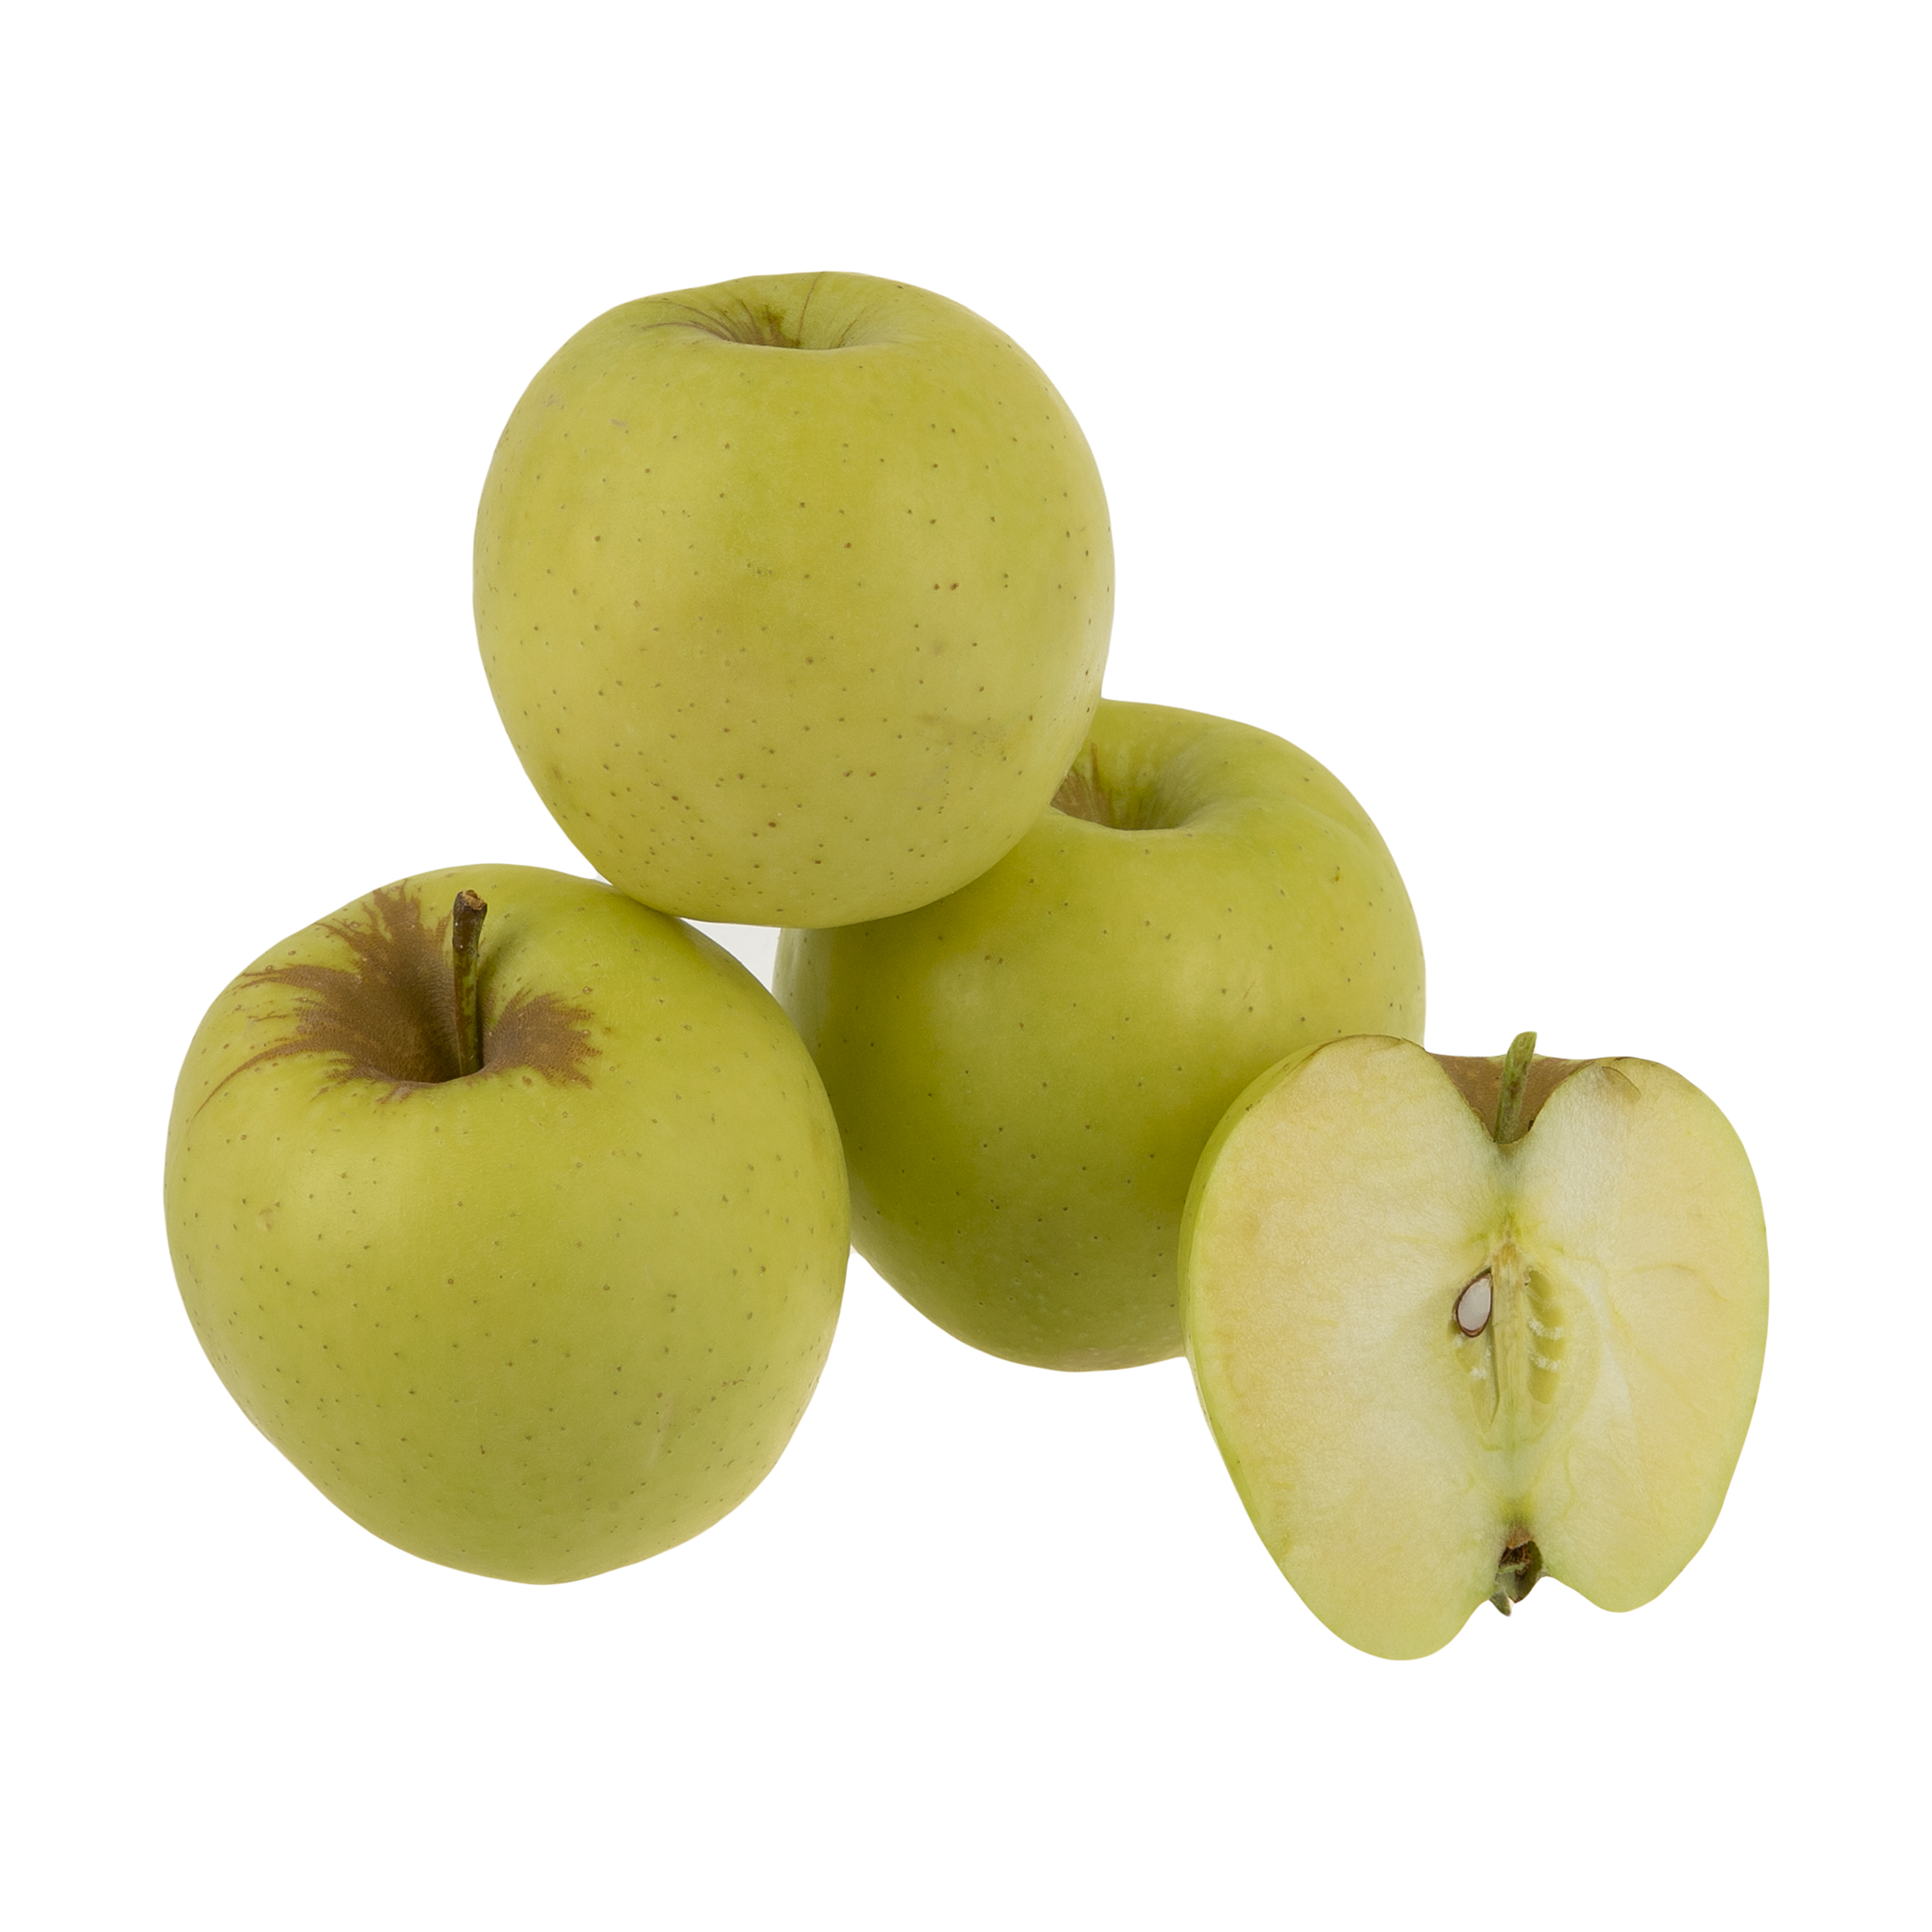 سیب زرد میوکات - 1 کیلوگرم